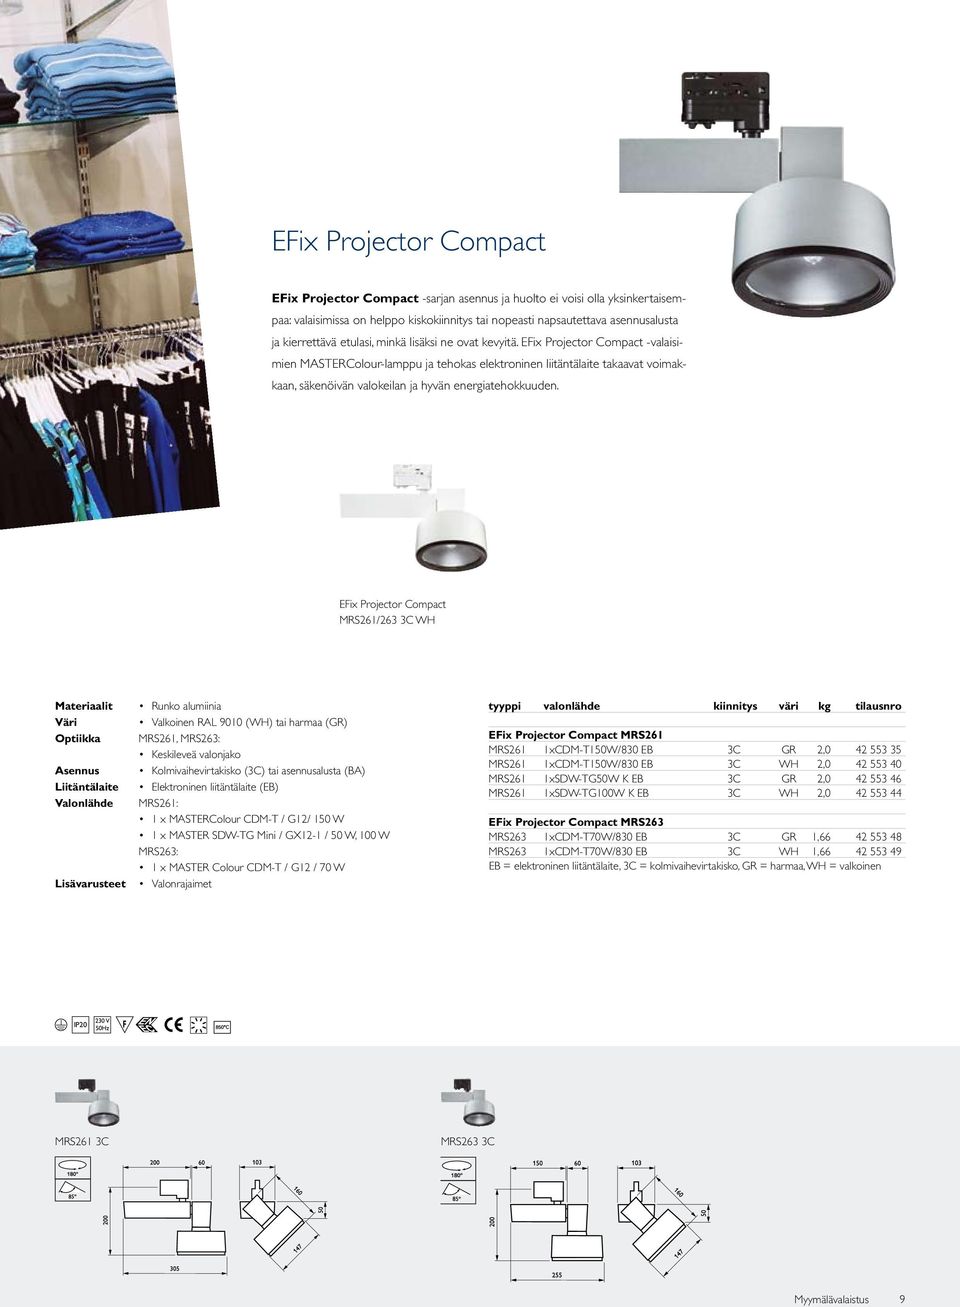 EFix Projector Compact valaisimien MASTERColour-lamppu ja tehokas elektroninen liitäntälaite takaavat voimakkaan, säkenöivän valokeilan ja hyvän energiatehokkuuden.